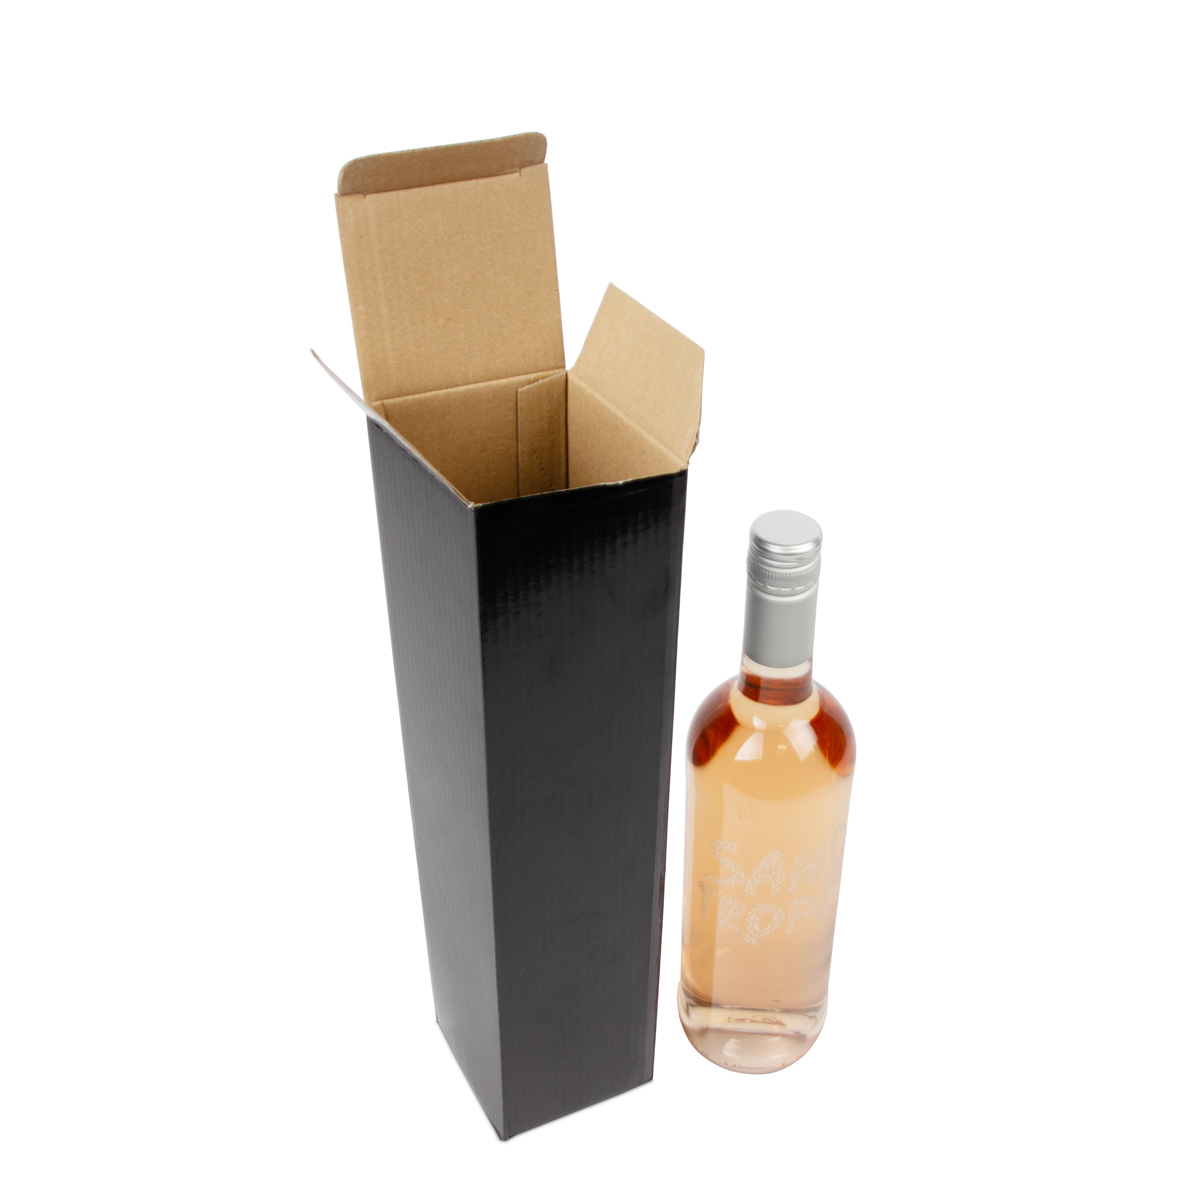 Cardboard wine bottle boxes